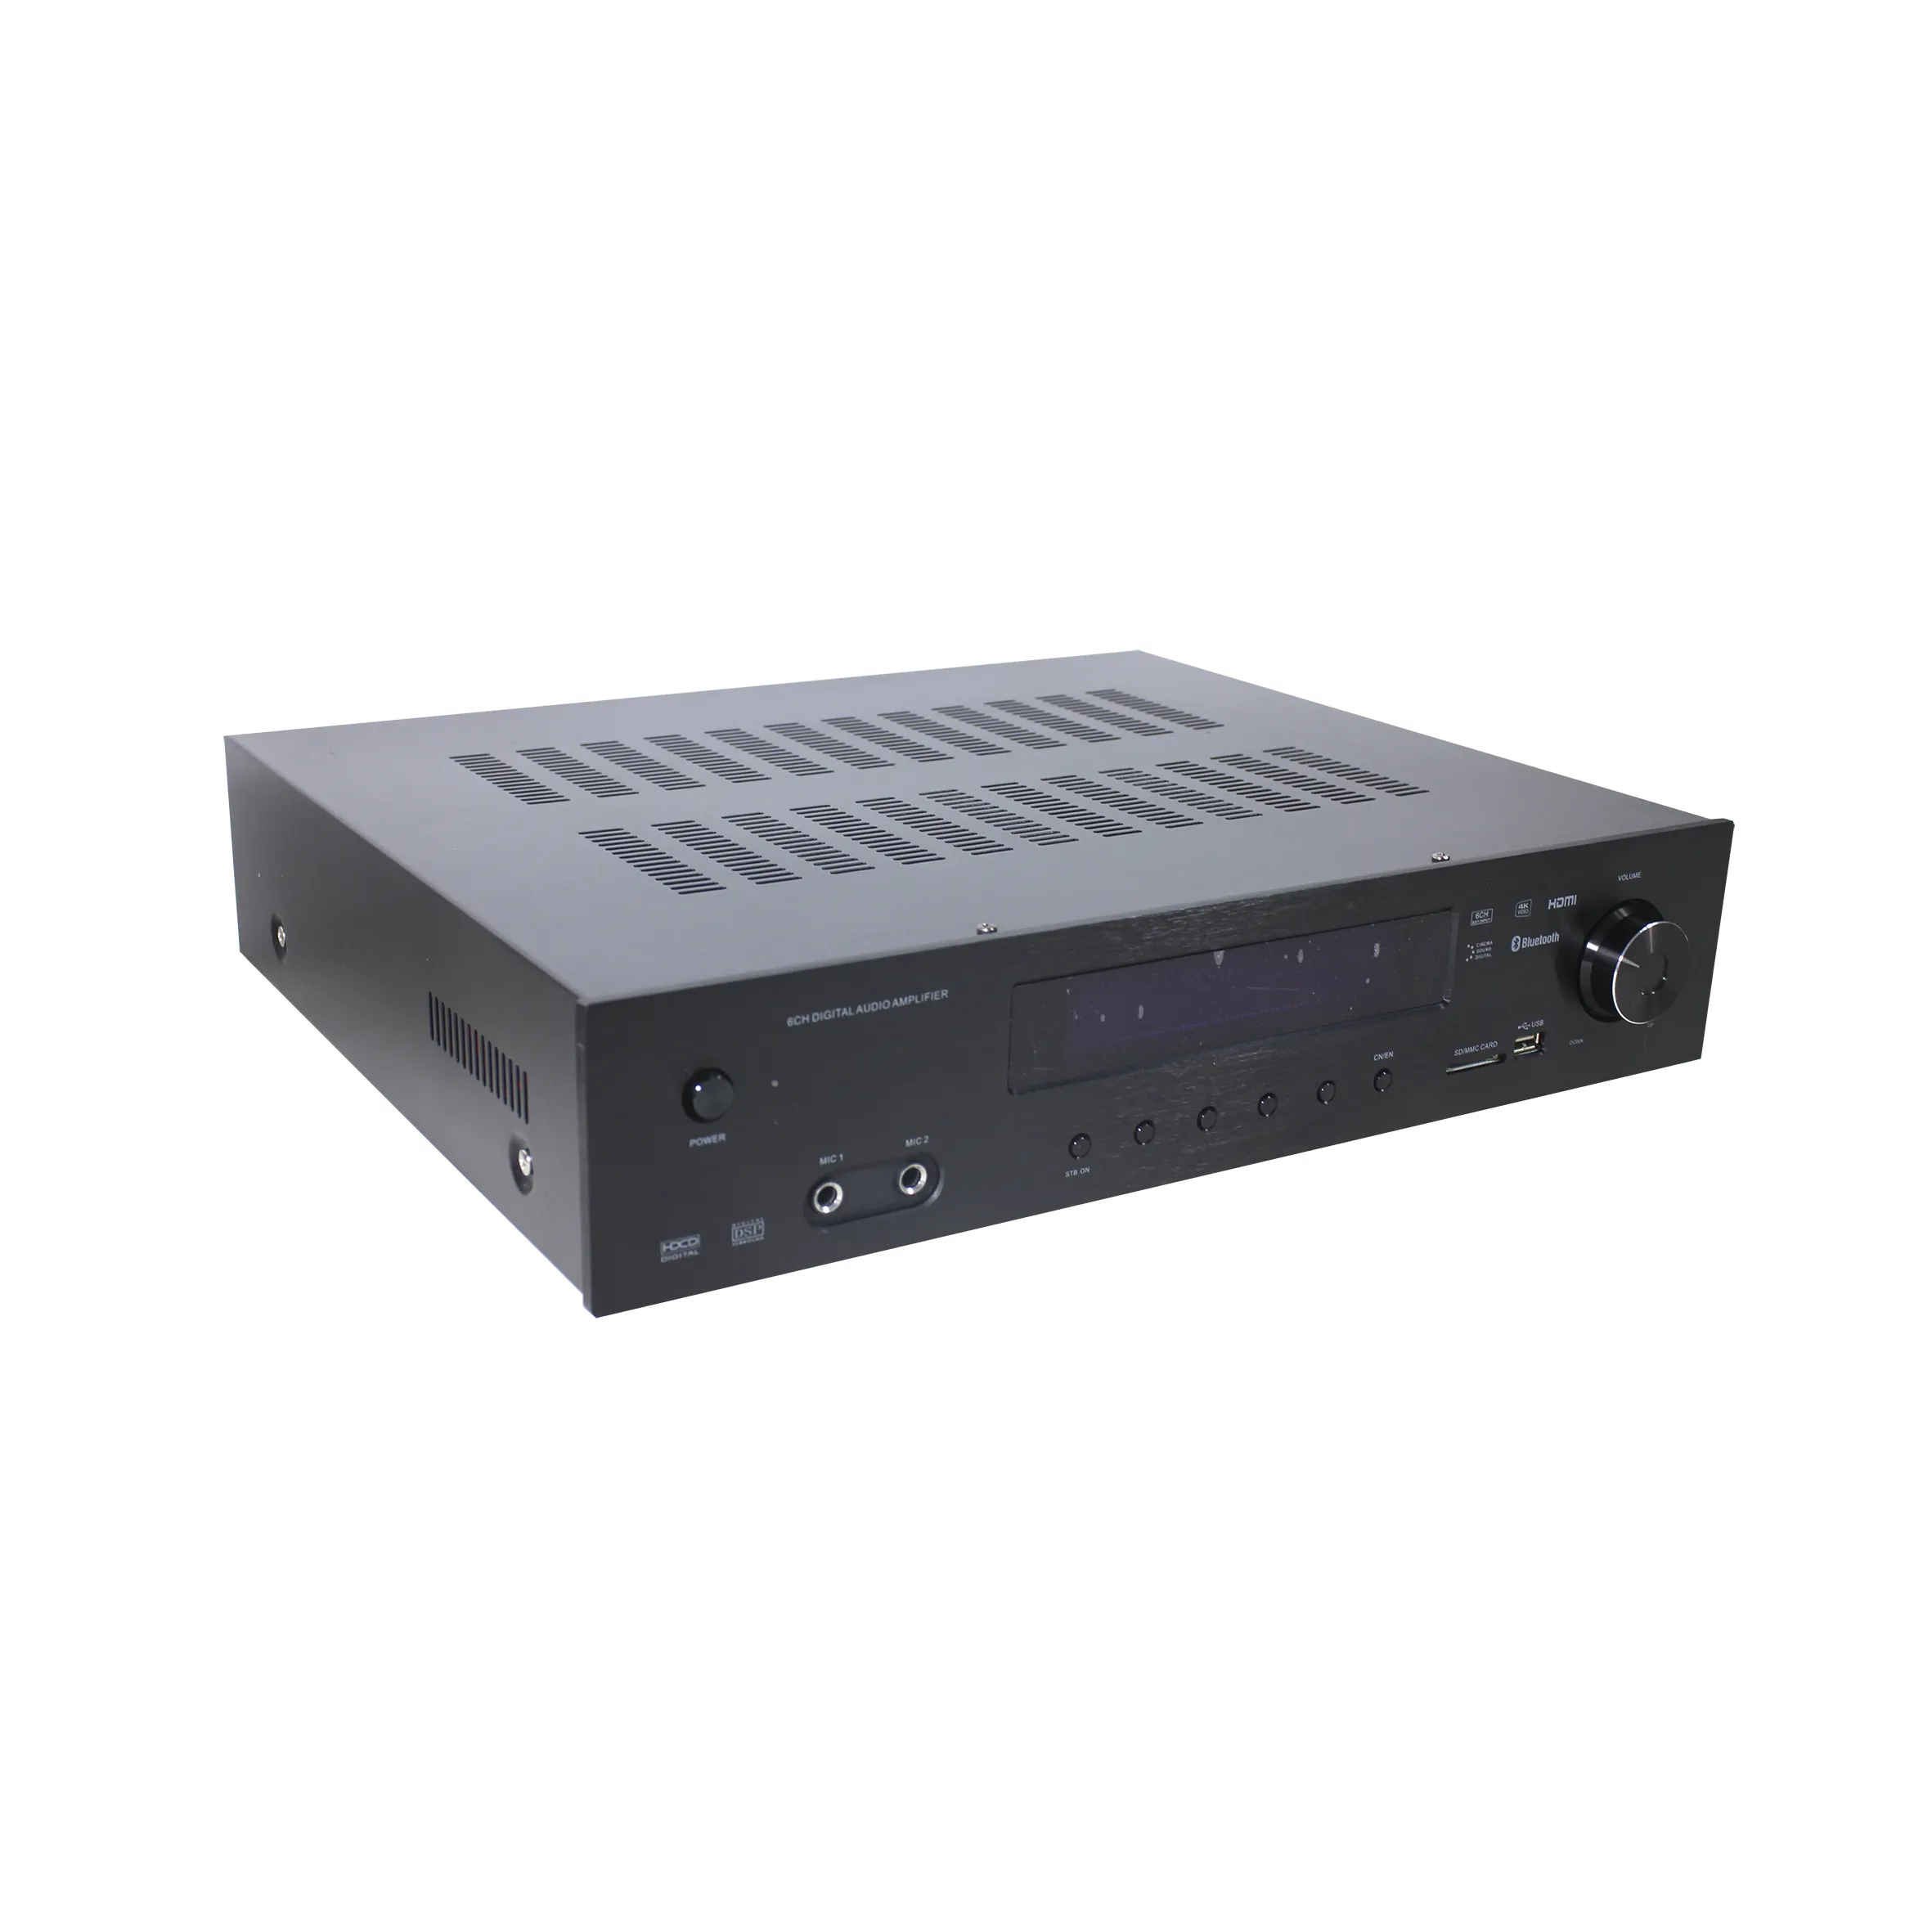 Amplificateur Audio-vidéo numérique 6 zones, avec amplificateur puissant, home cinéma 5.1, avec Mp3, TUNER, dents bleues, USB, carte SD, livraison gratuite